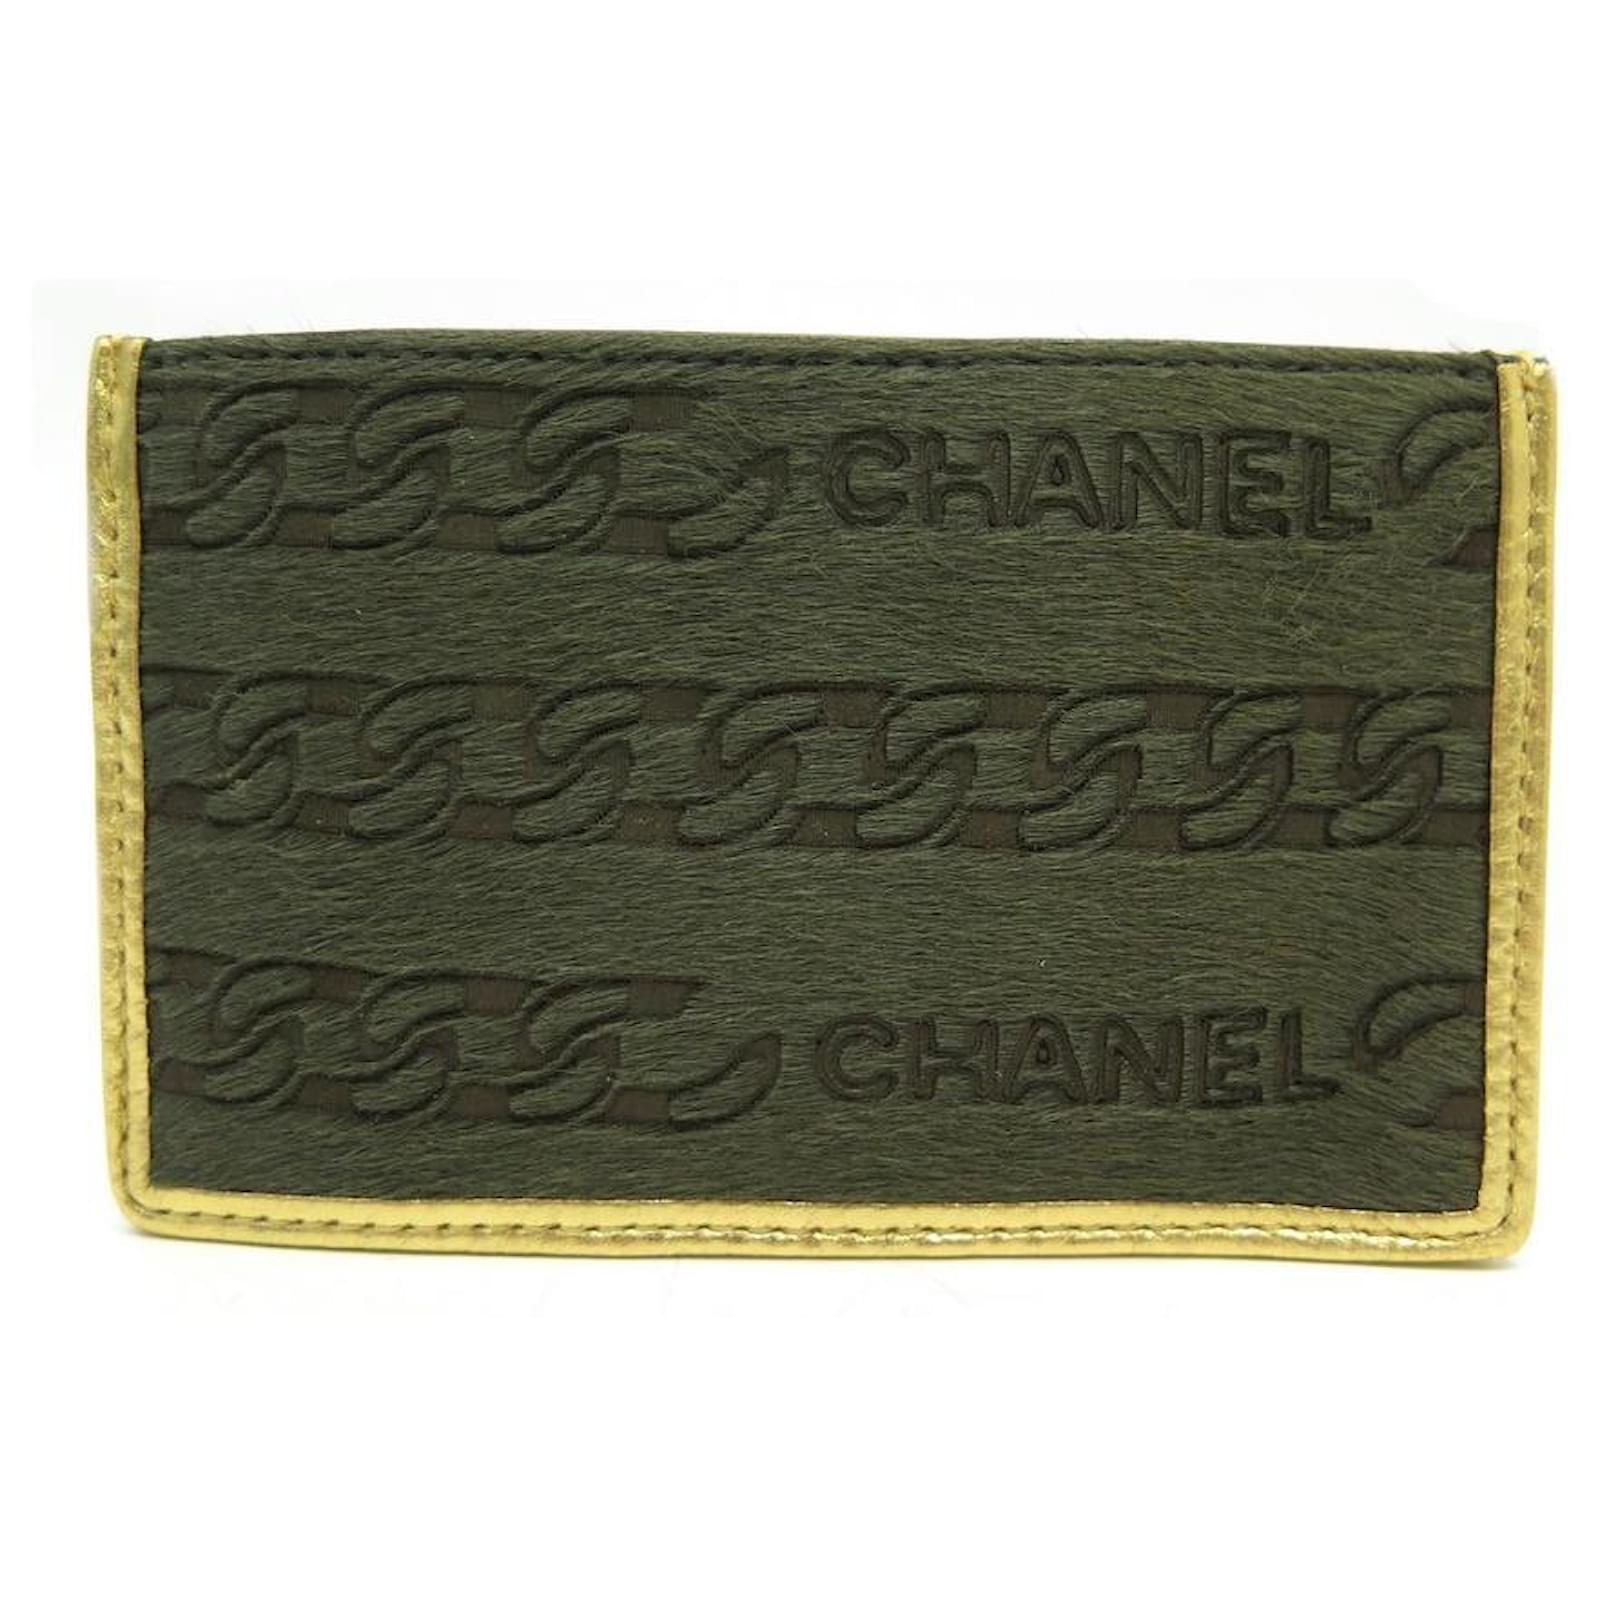 chanel key wallet